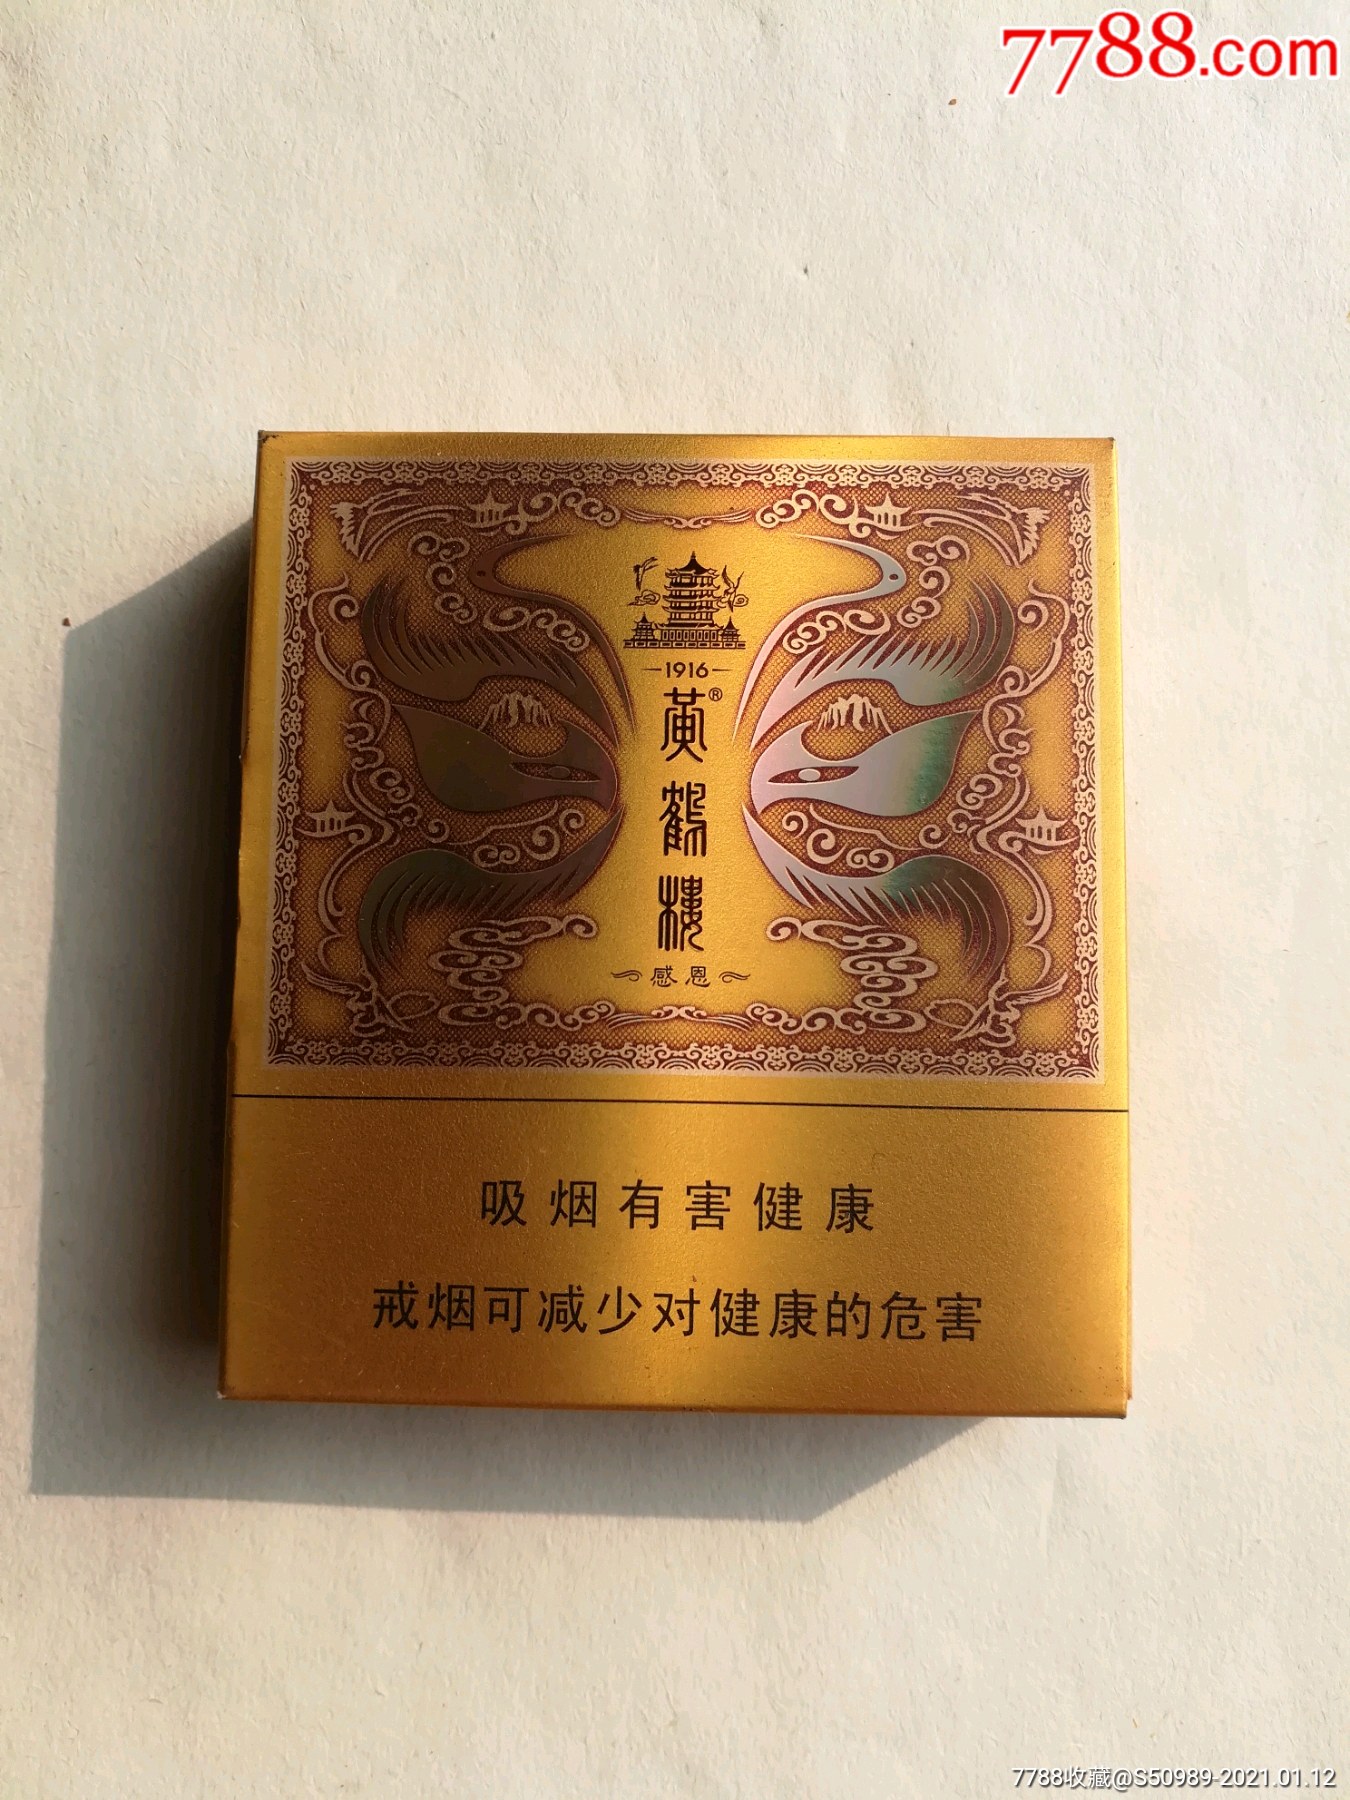 黄鹤楼扁盒35元一盒图片